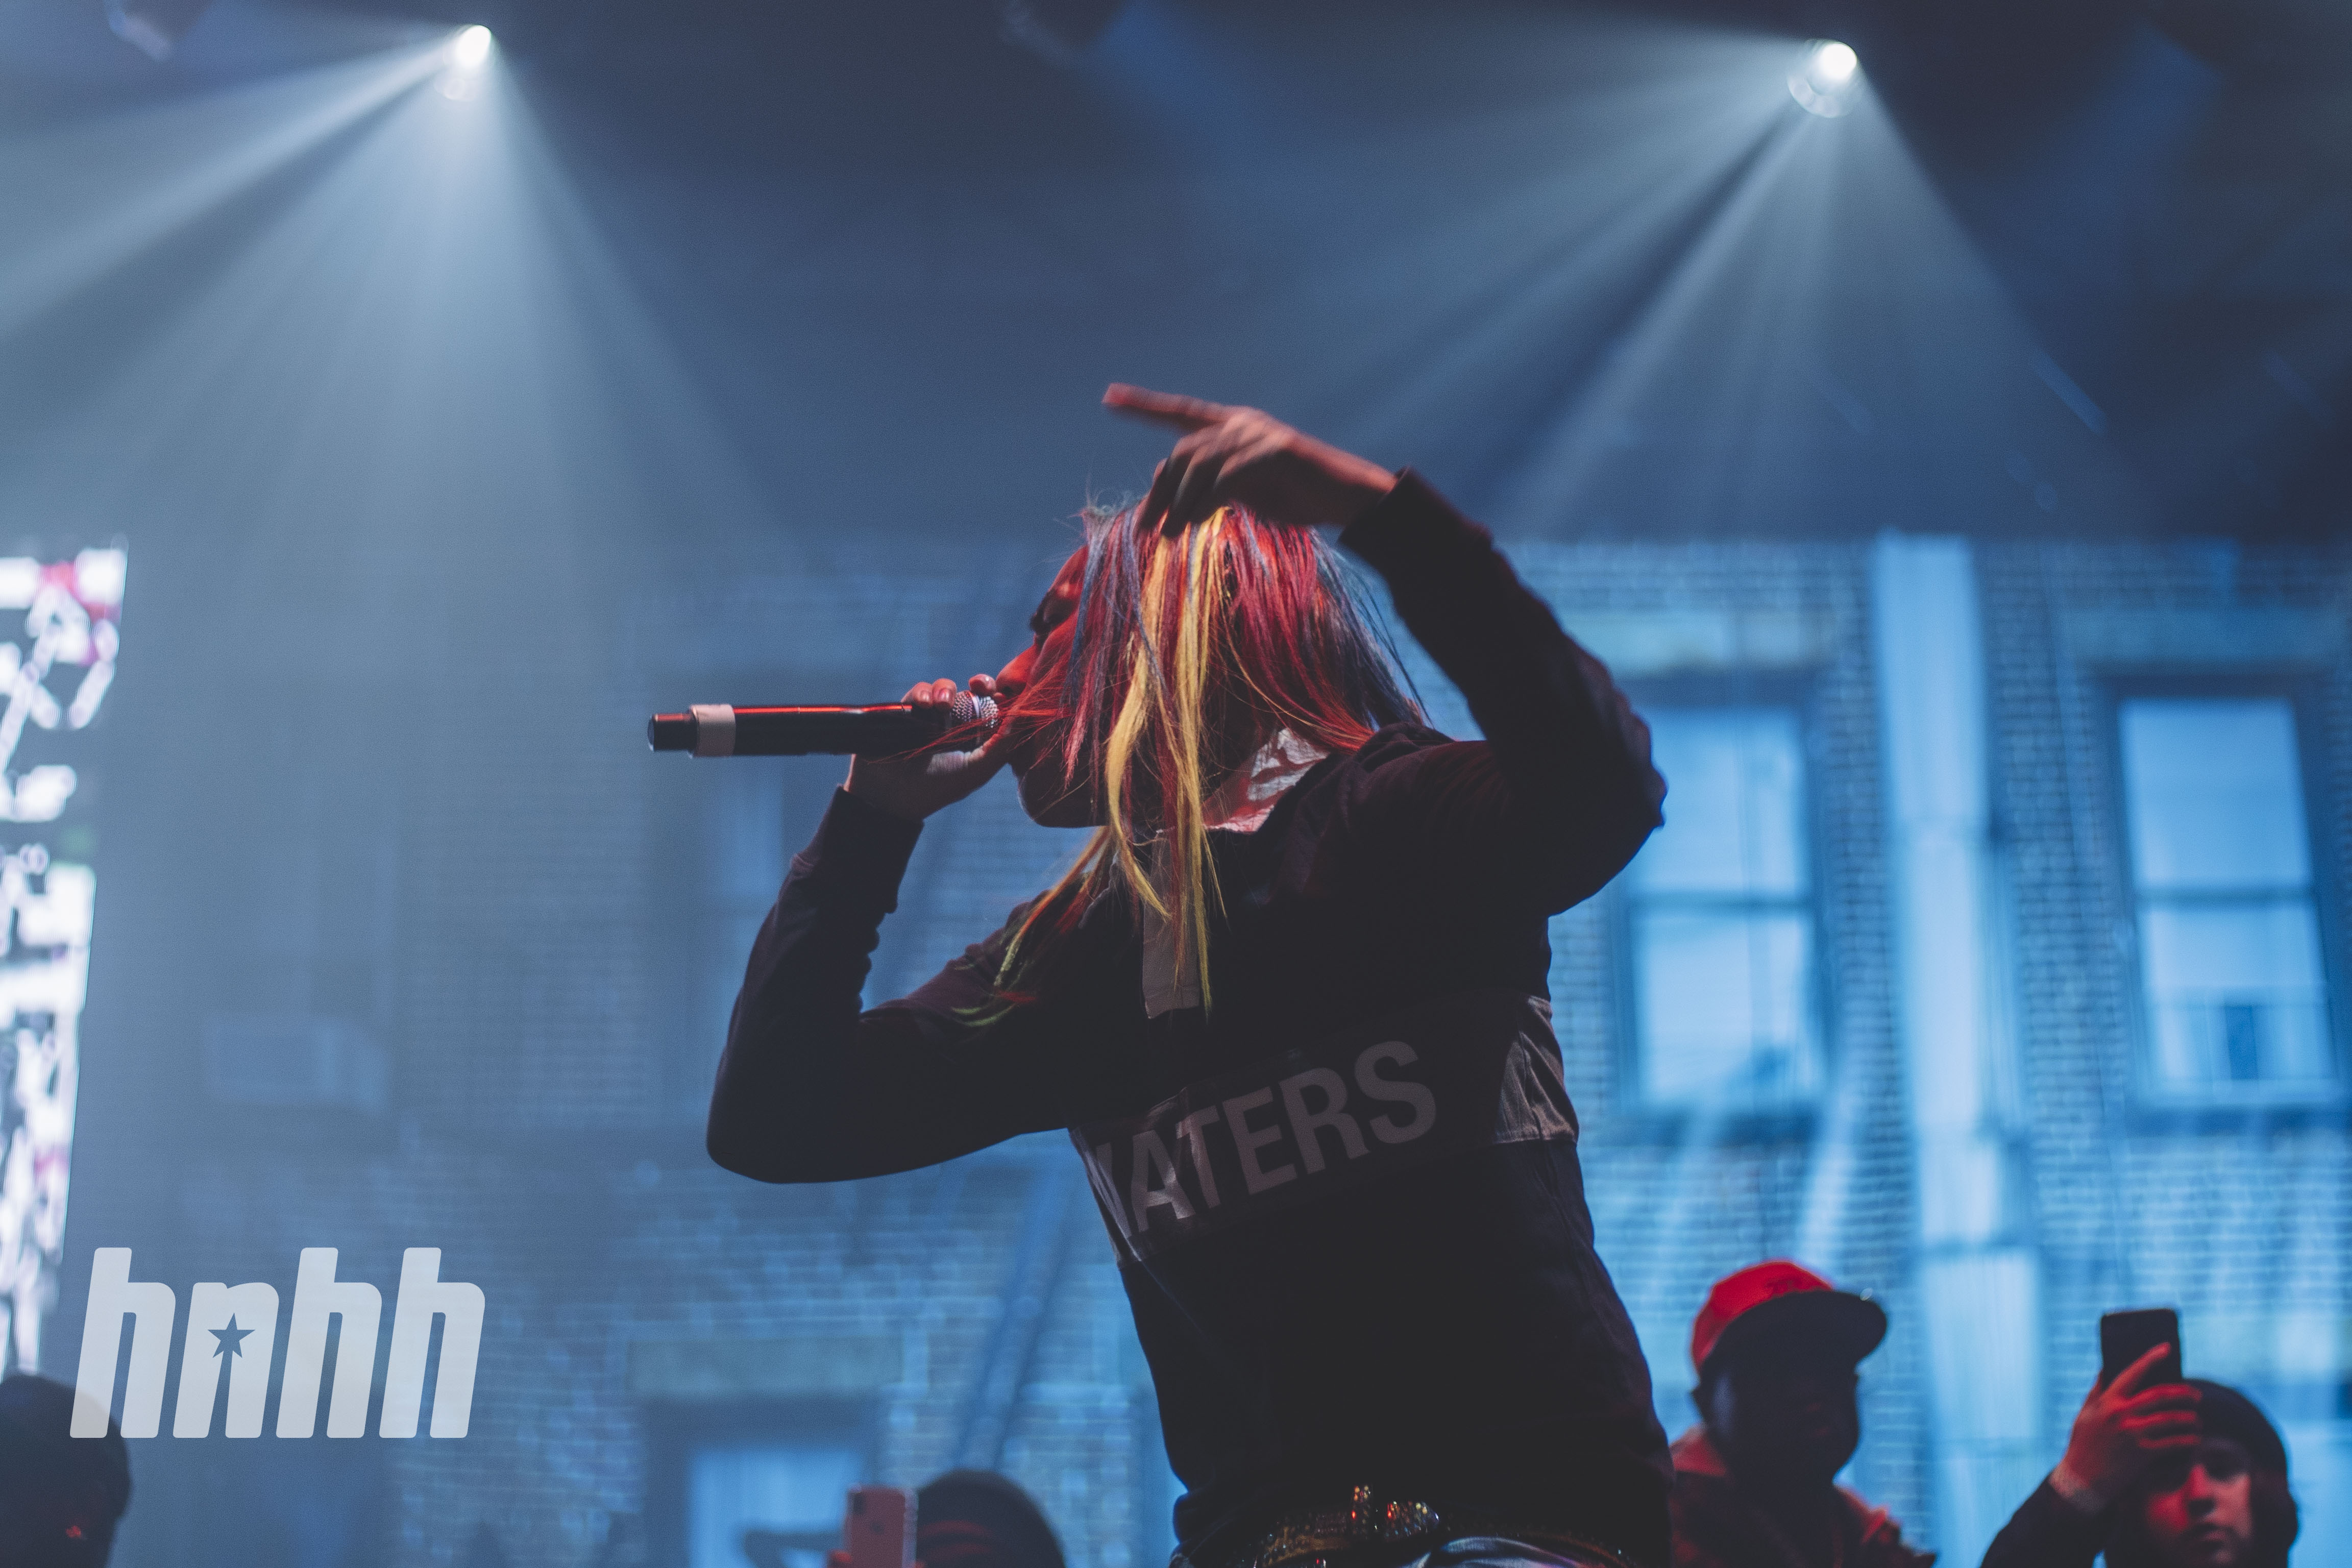 6ix9ine Tries To Argue His Album Didn’t Flop, Disses Trippie Redd & Lil Durk